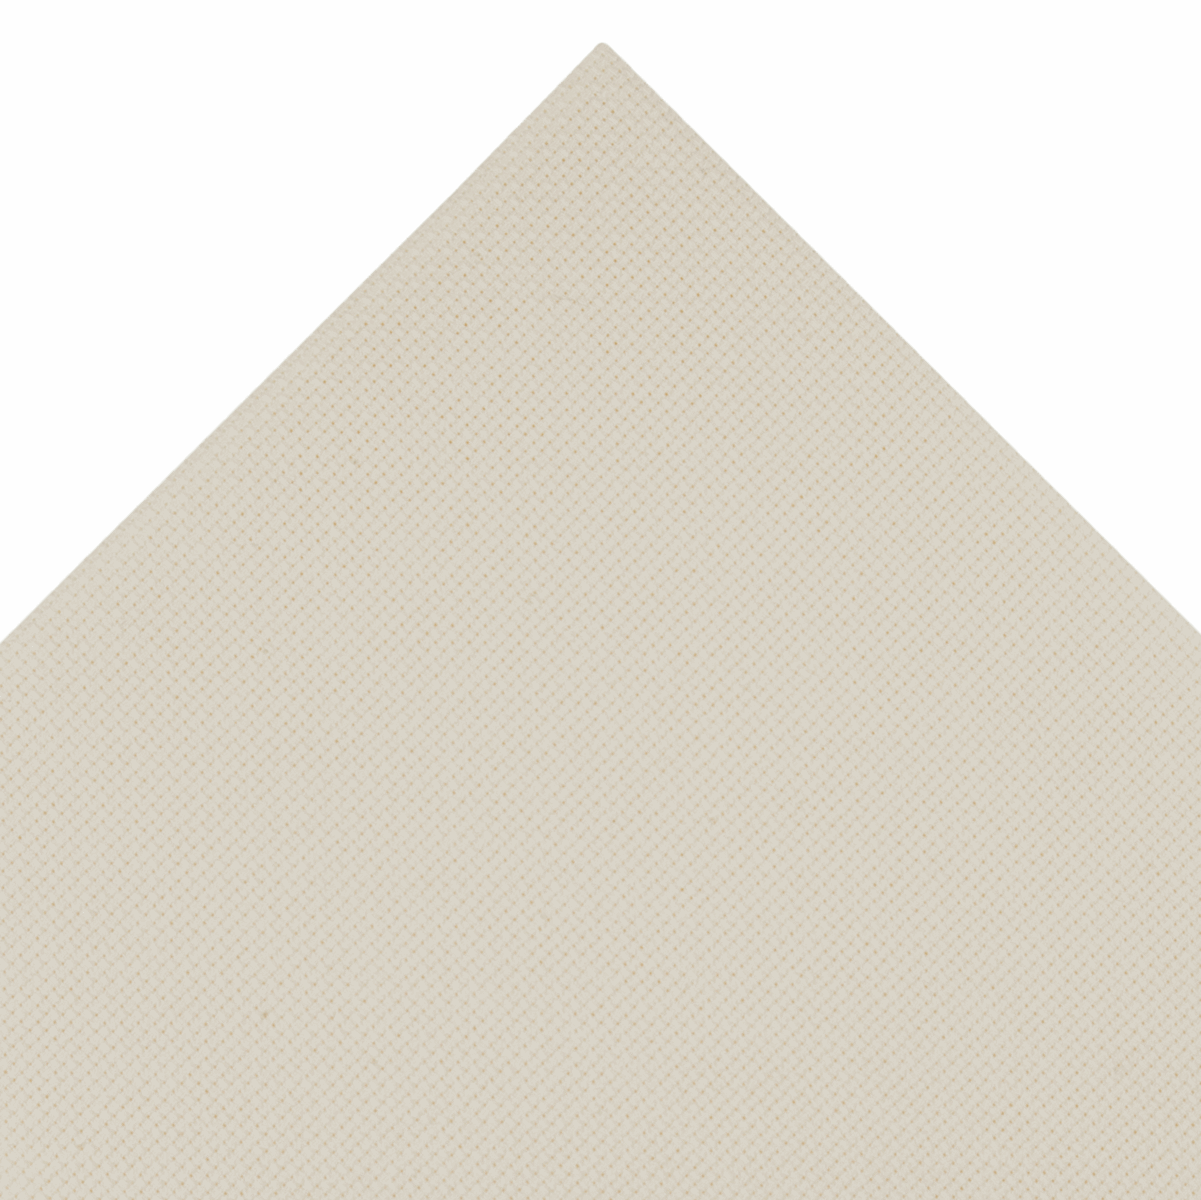 Trimits Cream Needlecraft Fabric - Aida 18 Count 45 x 30cm